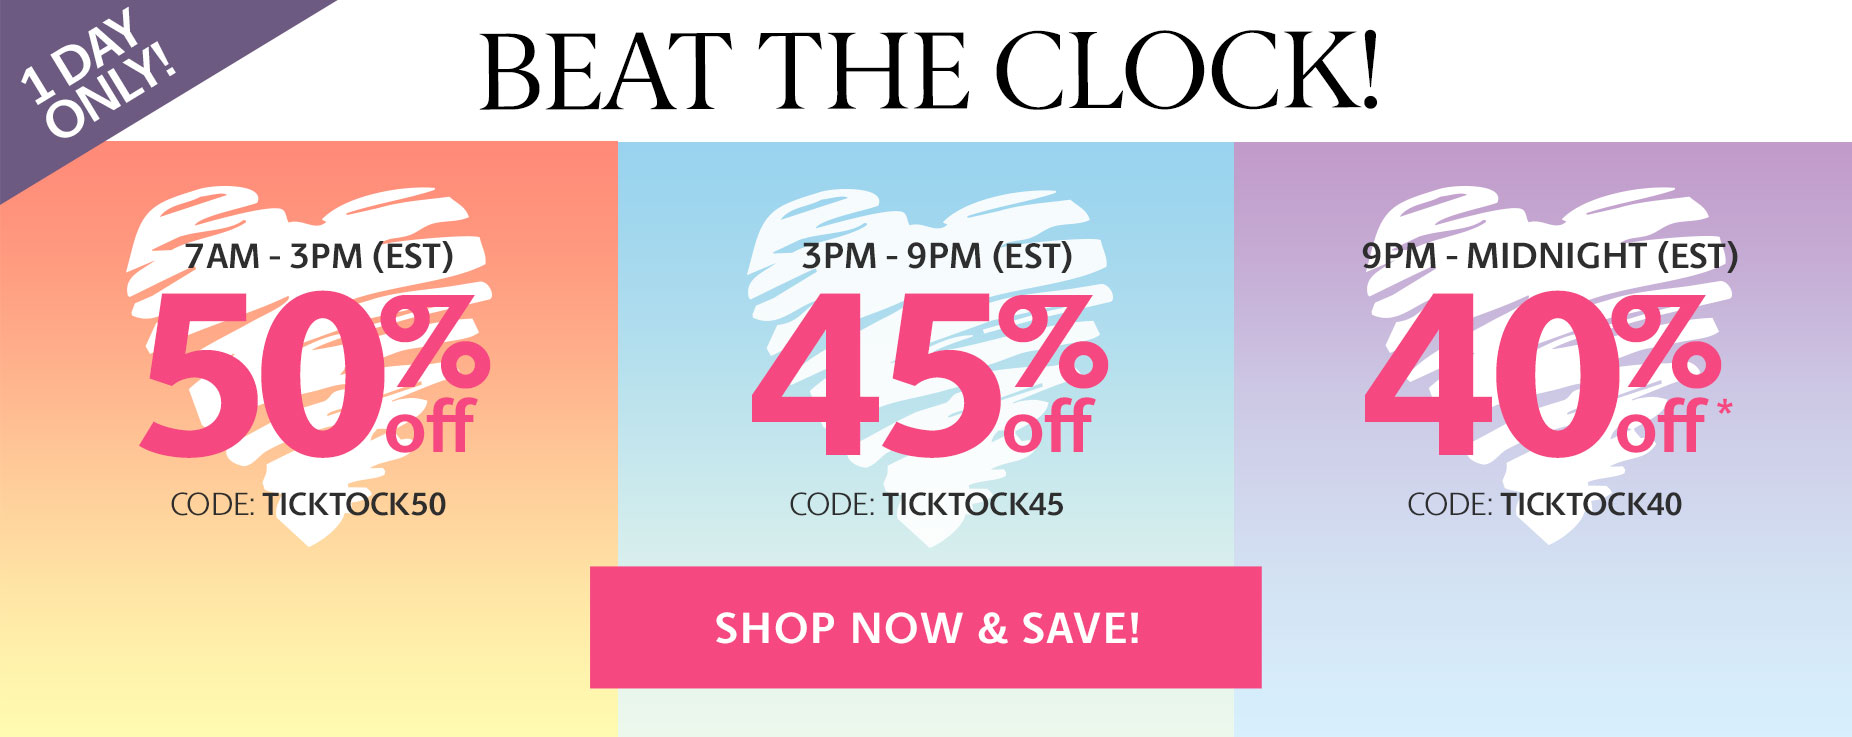 Beat The Clock - Shop & Save